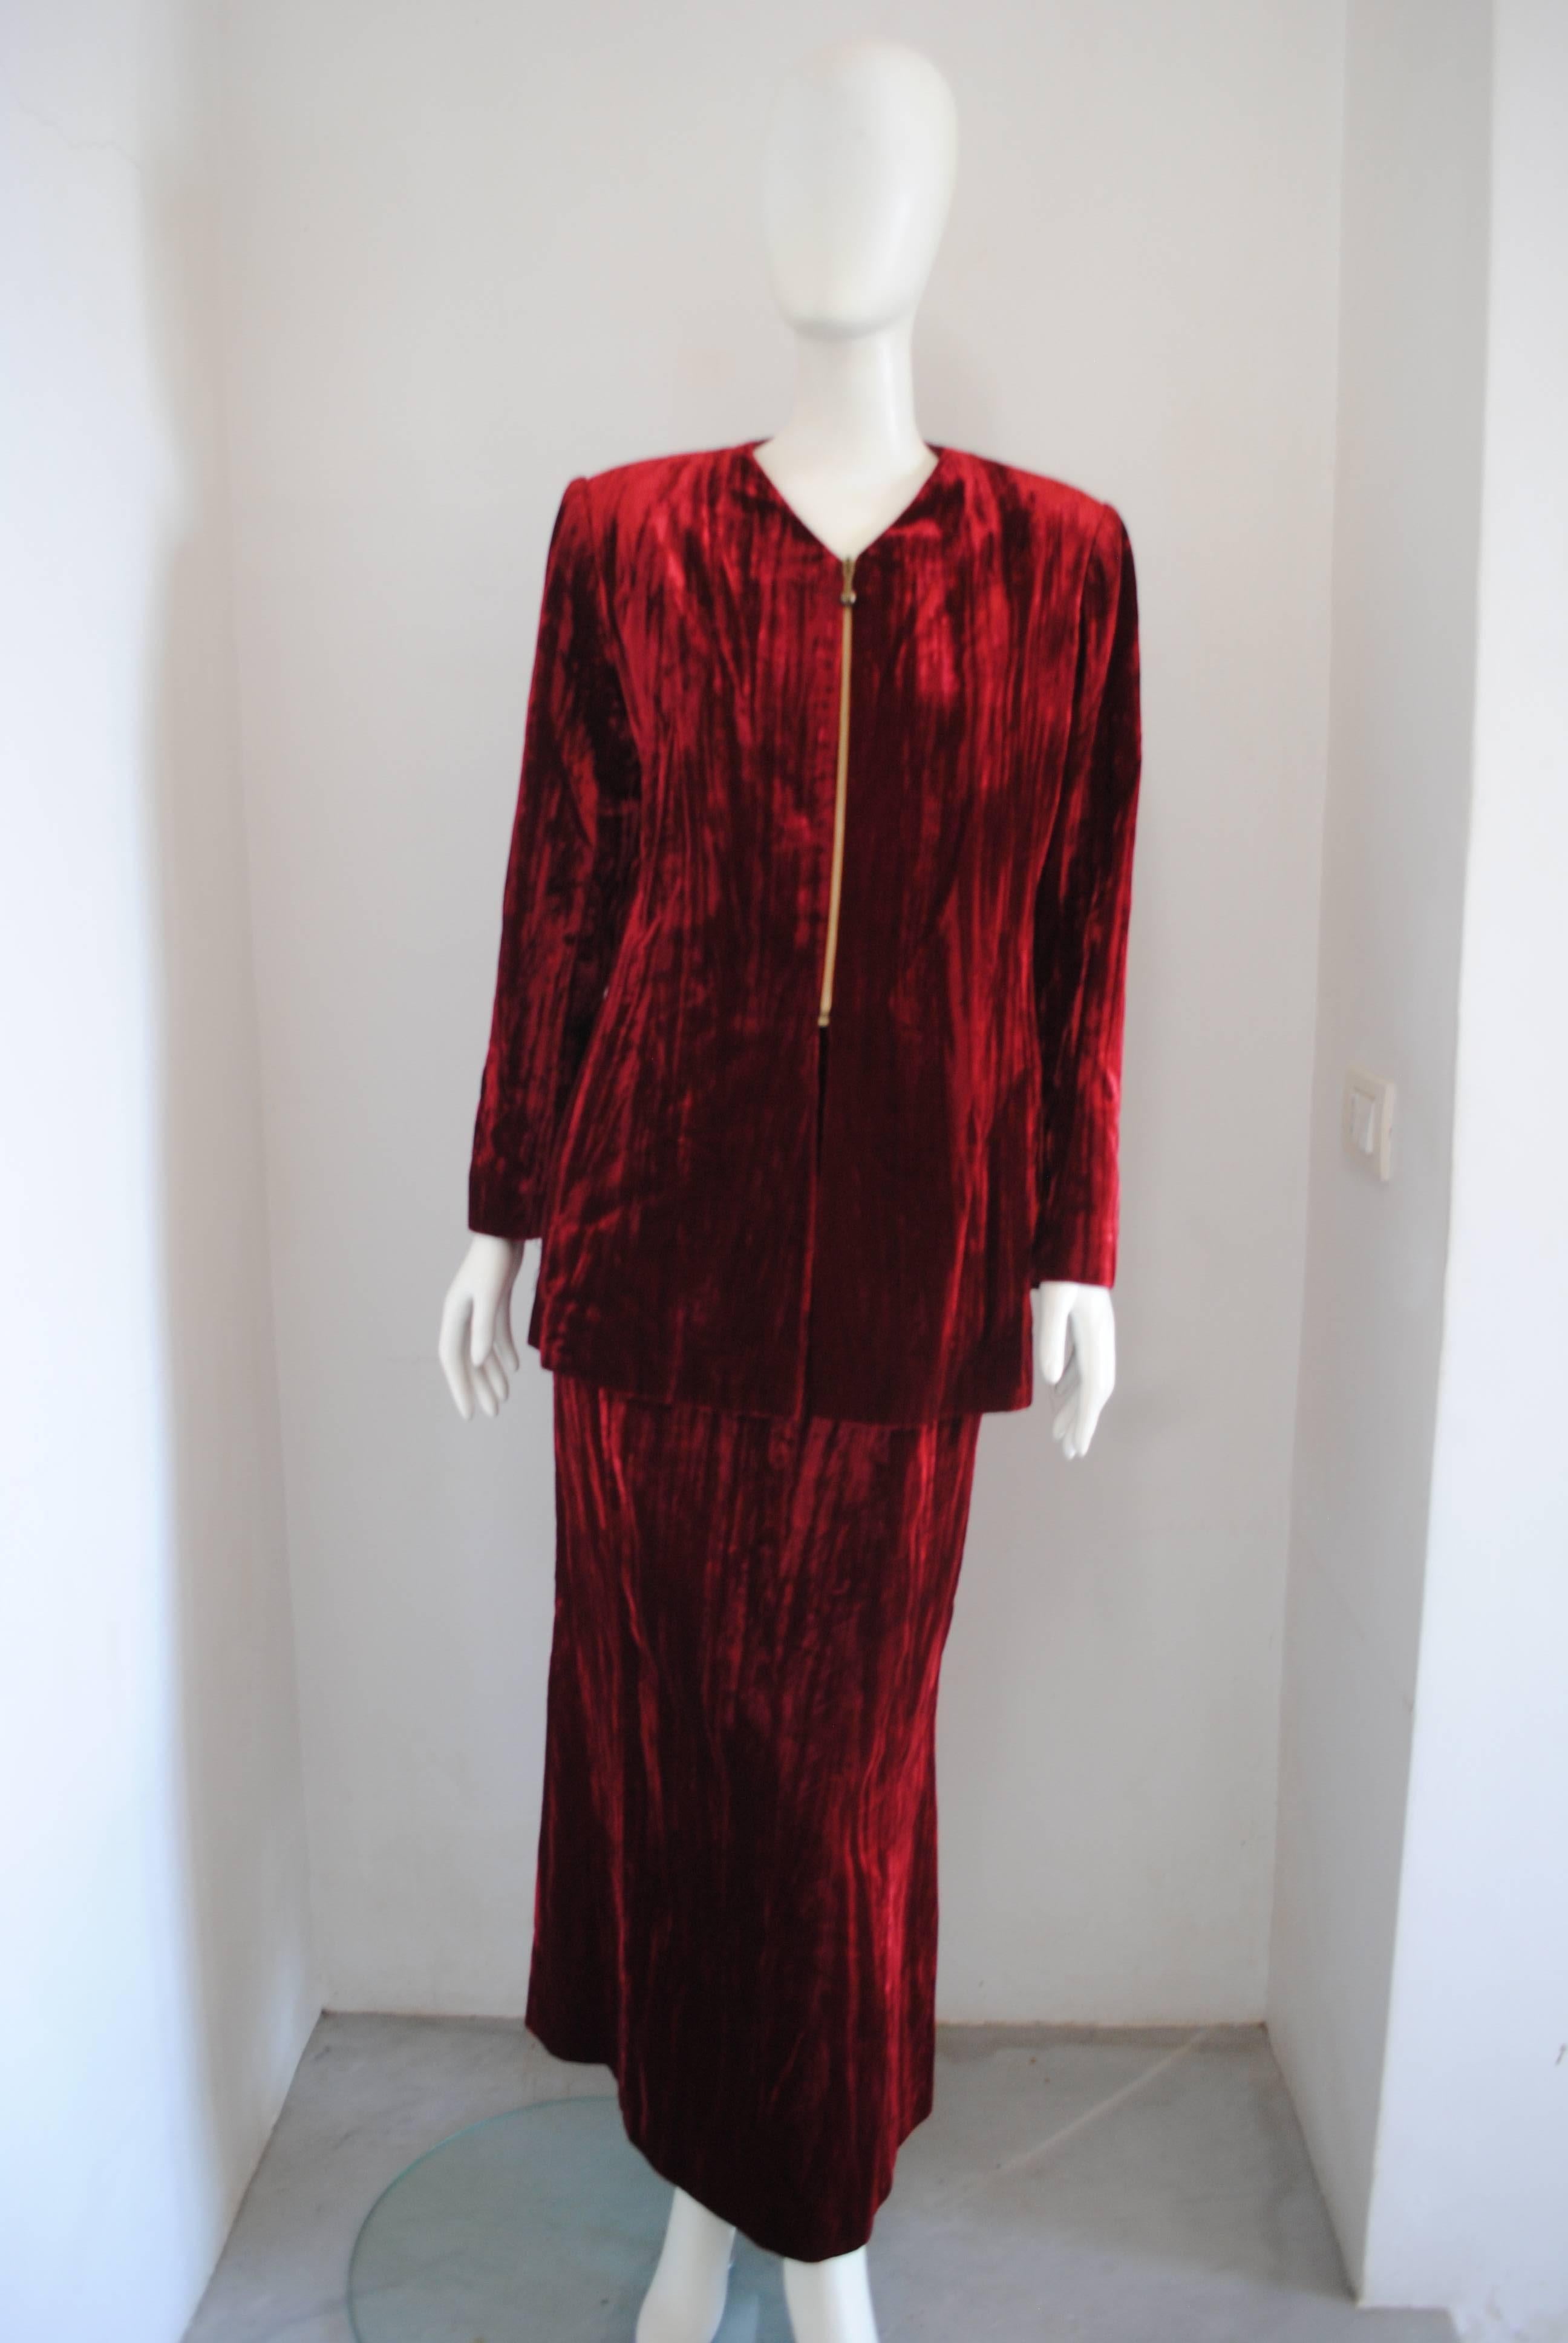 1980 Brujò Costume jupe en velours rouge

Totalement fabriqué en Italie 

Composition : Viscose

Mesures de la veste : Longueur totale 73 cm de l'épaule à l'ourlet 57 cm 

Mesures de la jupe : Longueur totale 100 cm Taille 74 cm embelli par un